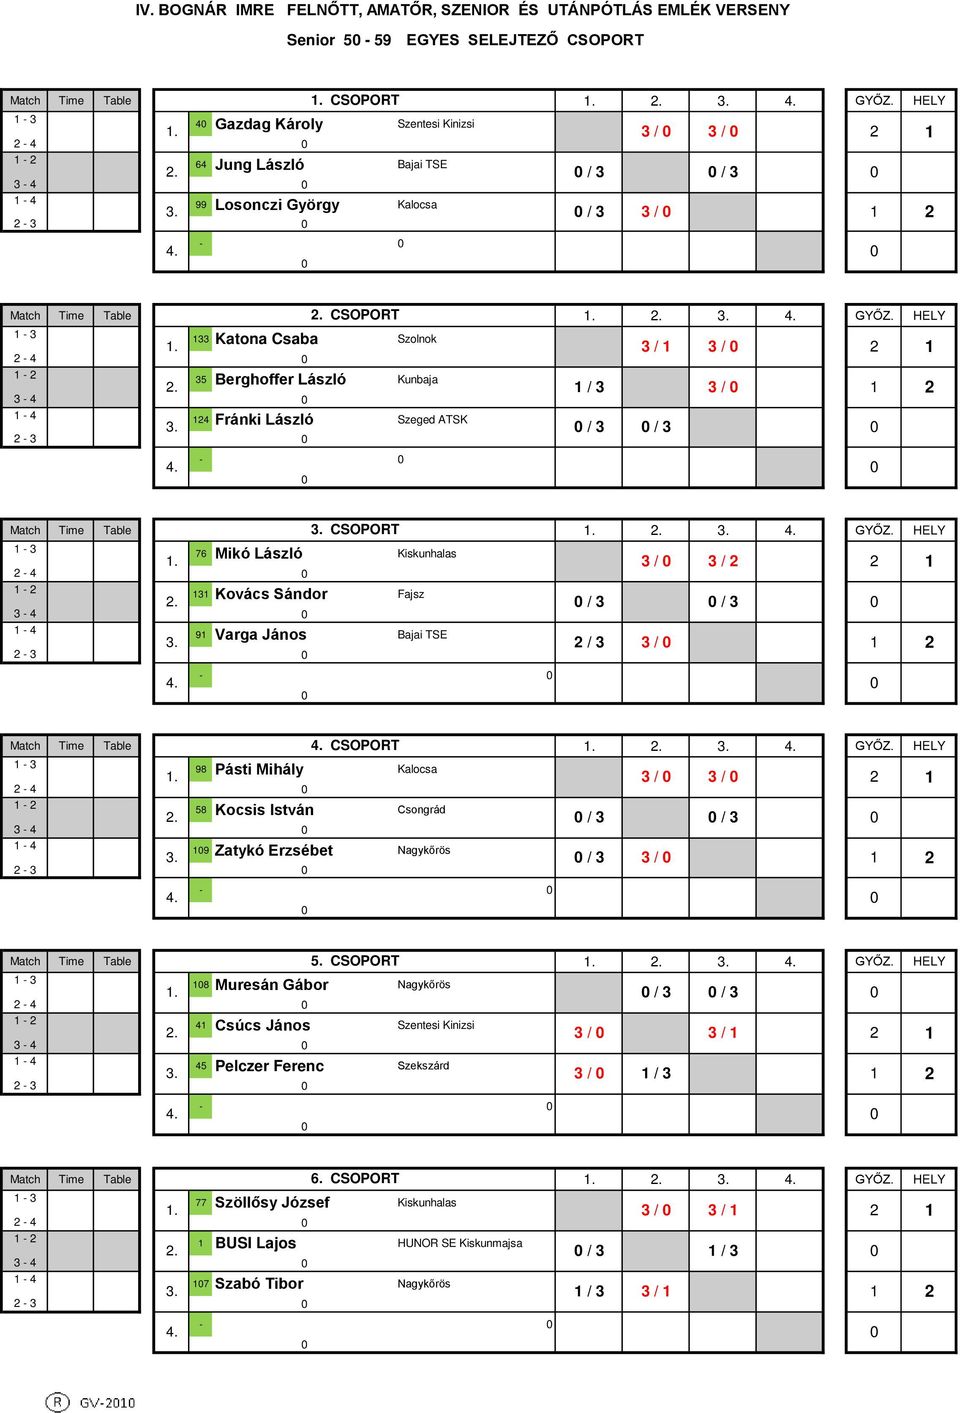 / 3 3 / 3-4 - 4 4 Fránki László Szeged ATSK / 3 / 3-3 - Match Time Table CSOPORT - 3 76 Mikó László Kiskunhalas. 3 / 3 / - 4-3 Kovács Sándor Fajsz.